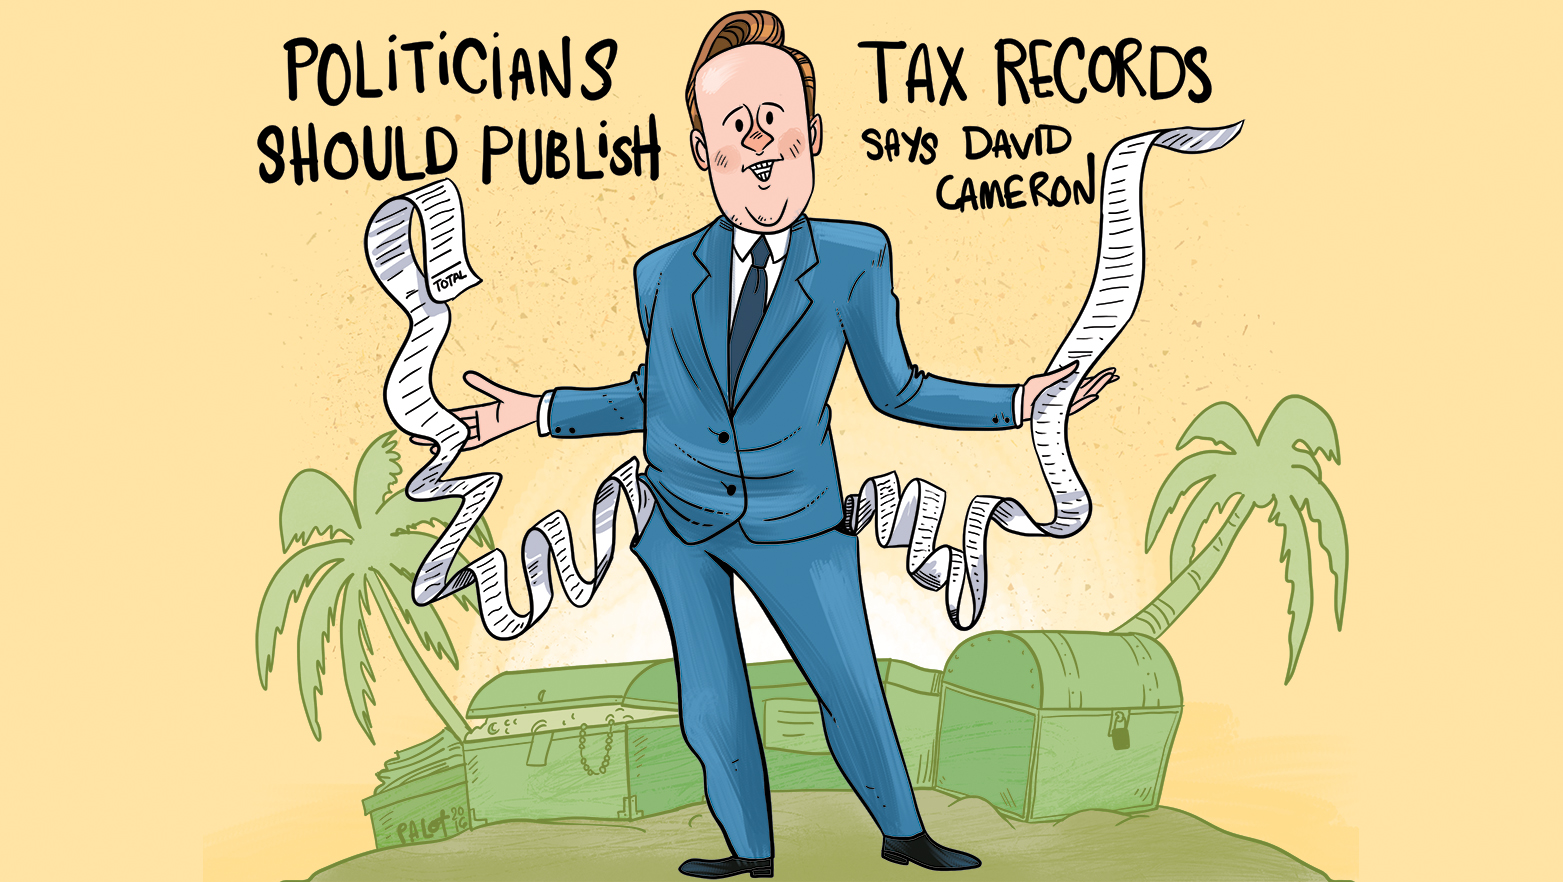 PM Cameron says UK politicians should publish tax records